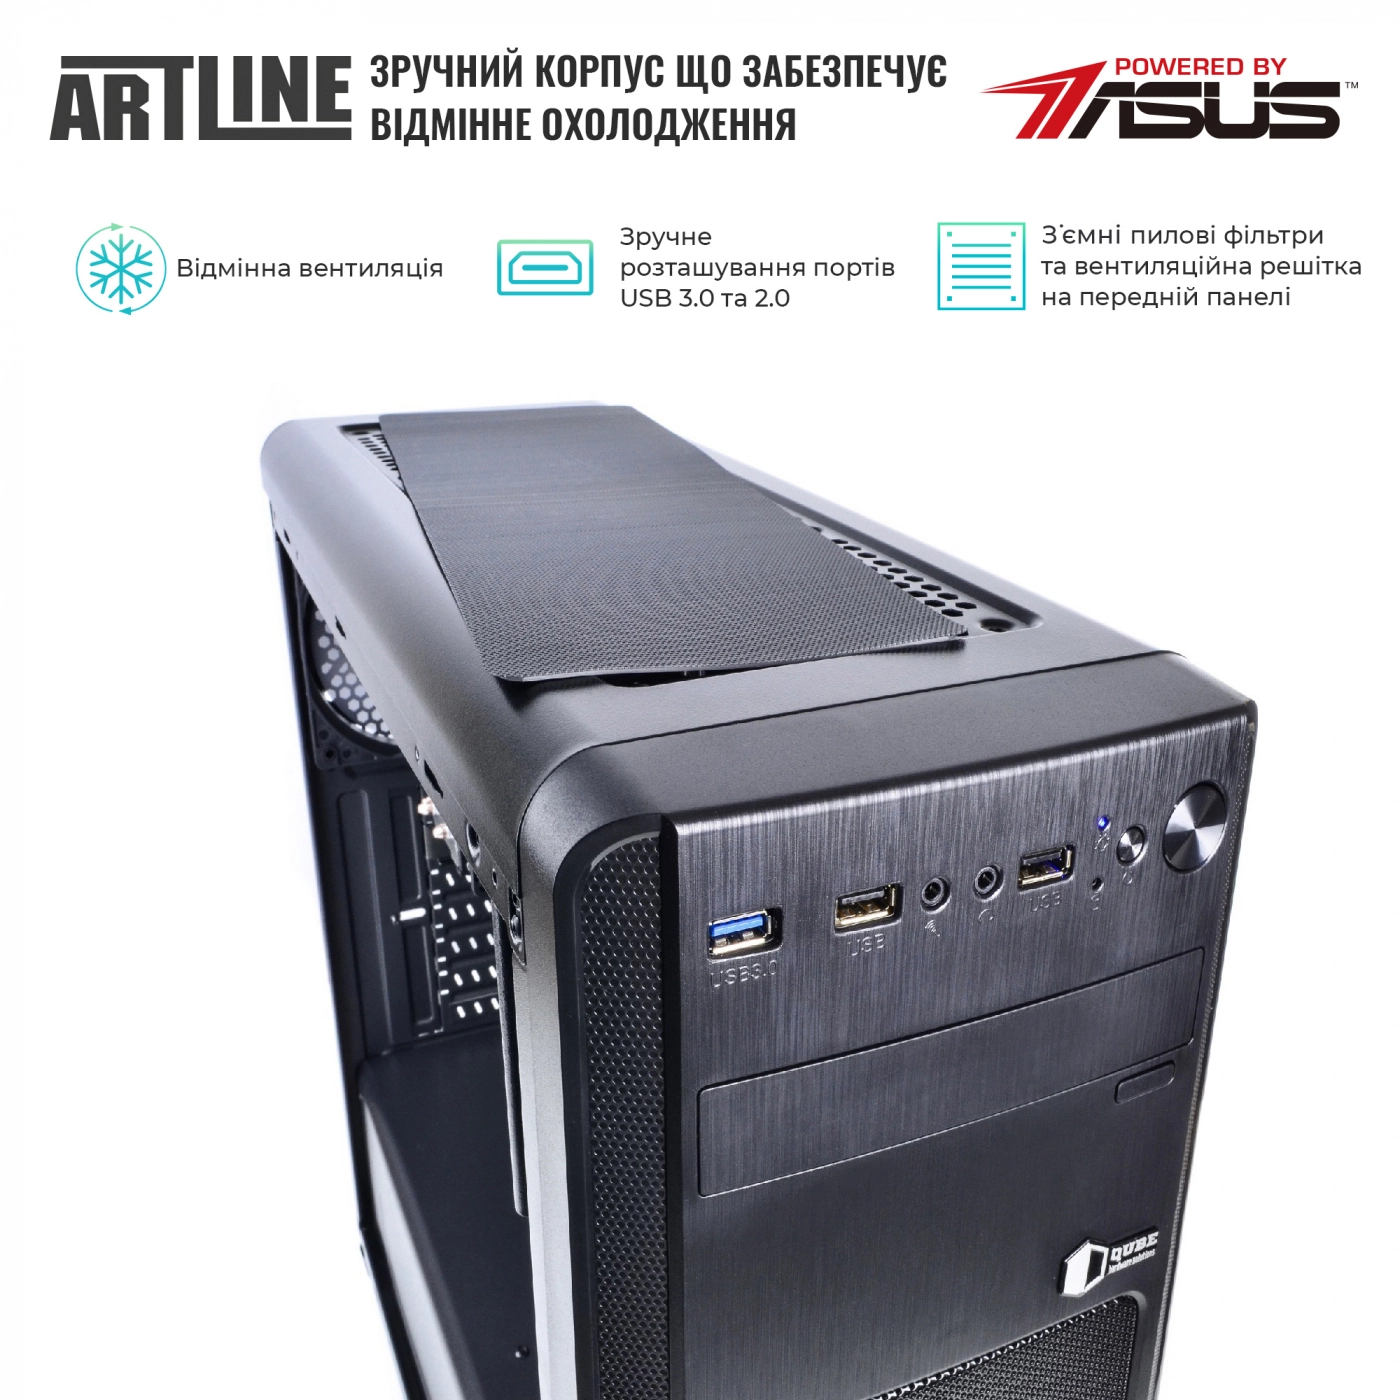 Купить Сервер ARTLINE Business T15v14 - фото 2